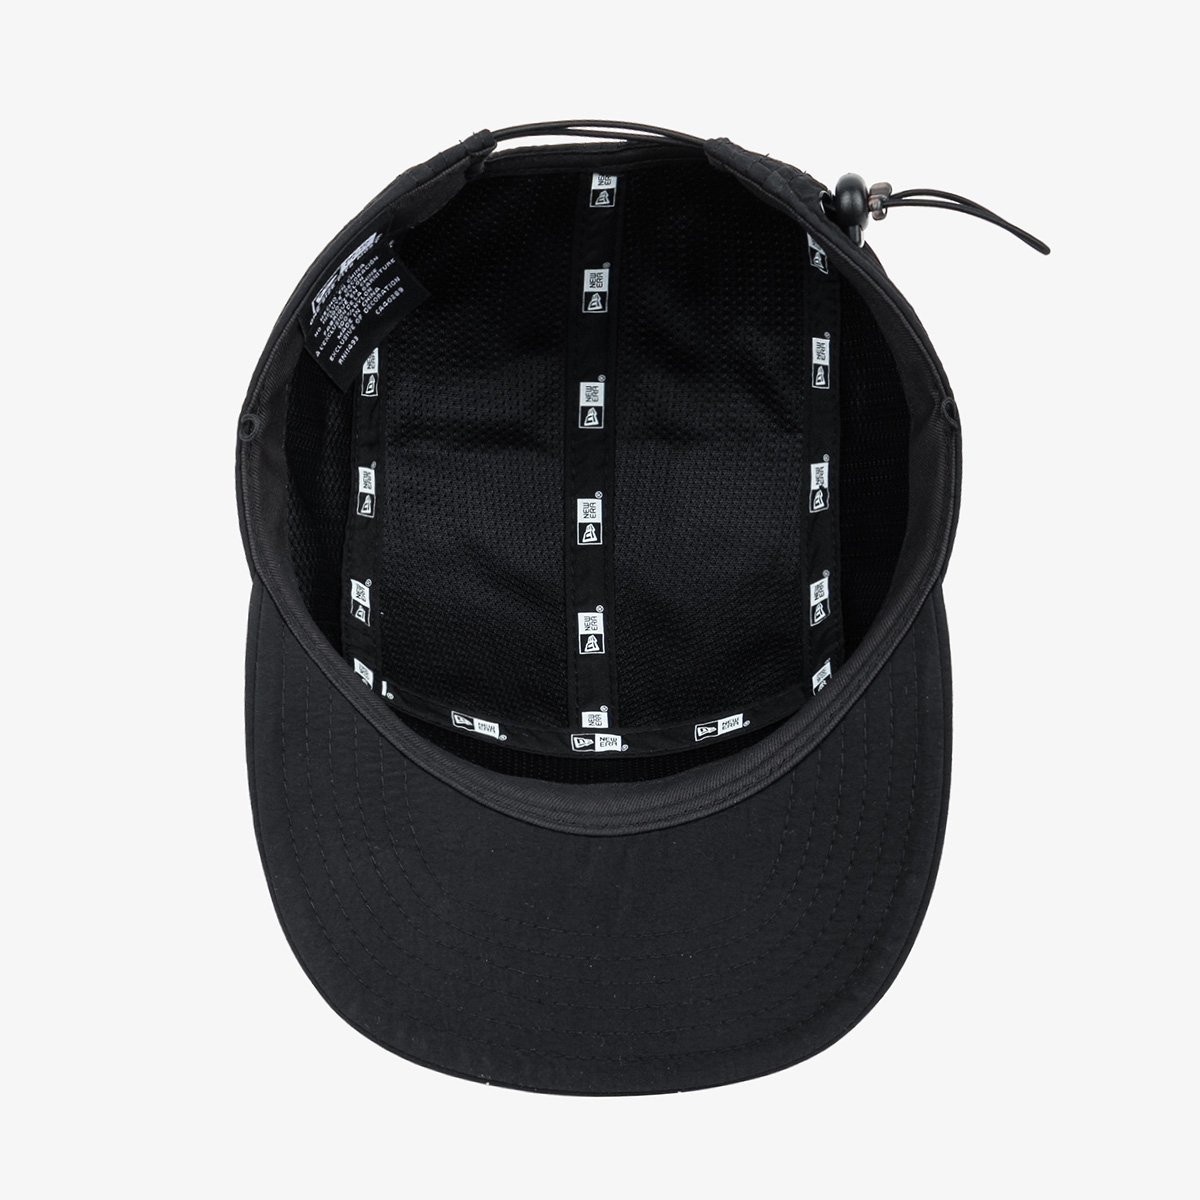 New Era Black Packable Camper Cap